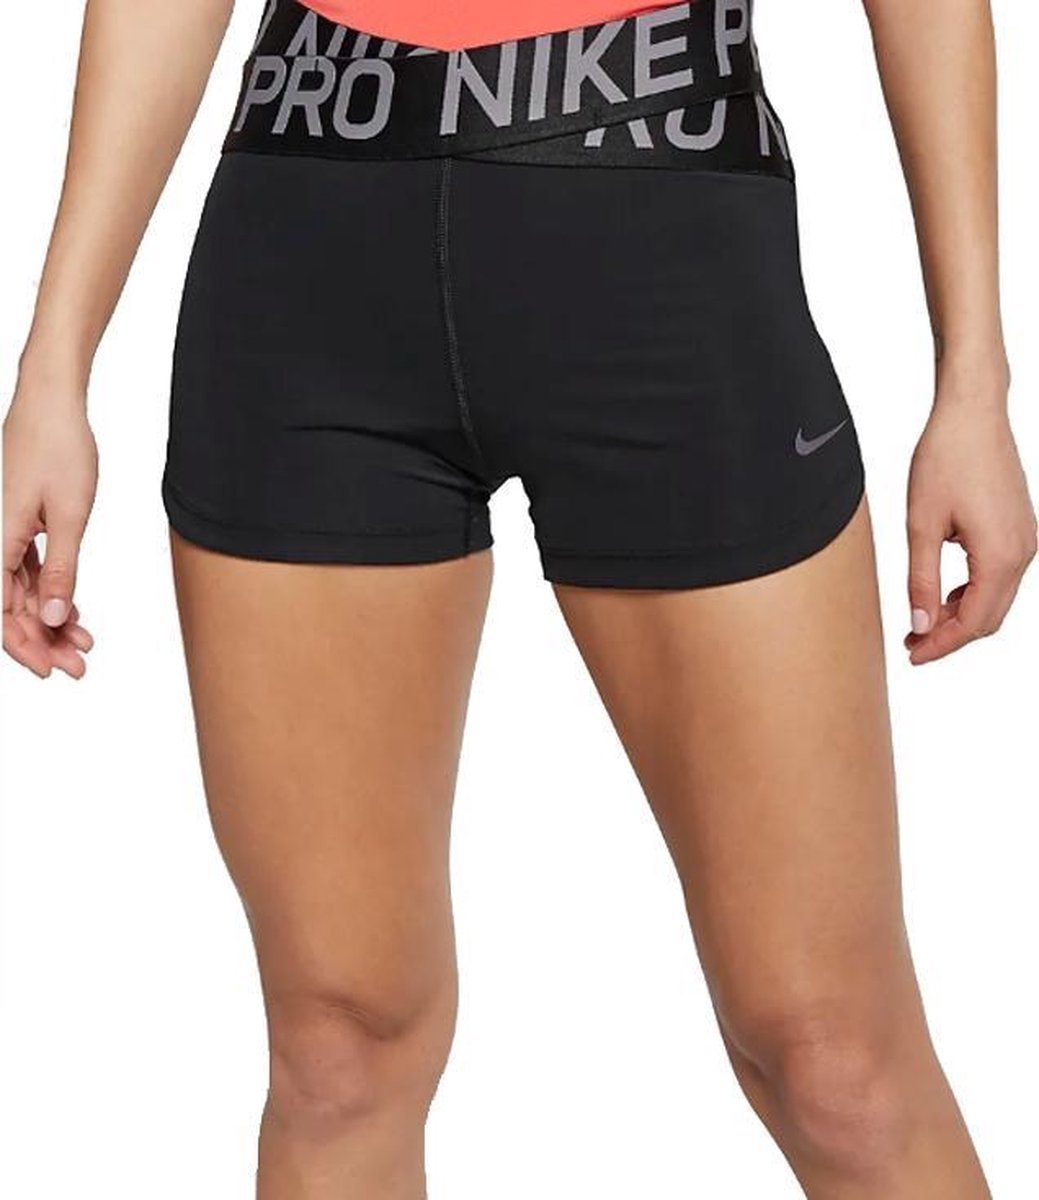 Herrie kwaliteit gaan beslissen Nike Pro Intertwist 2 3inch W Short BQ8320-010, Vrouwen, Zwart,  Sportbroeken maat: M EU | bol.com